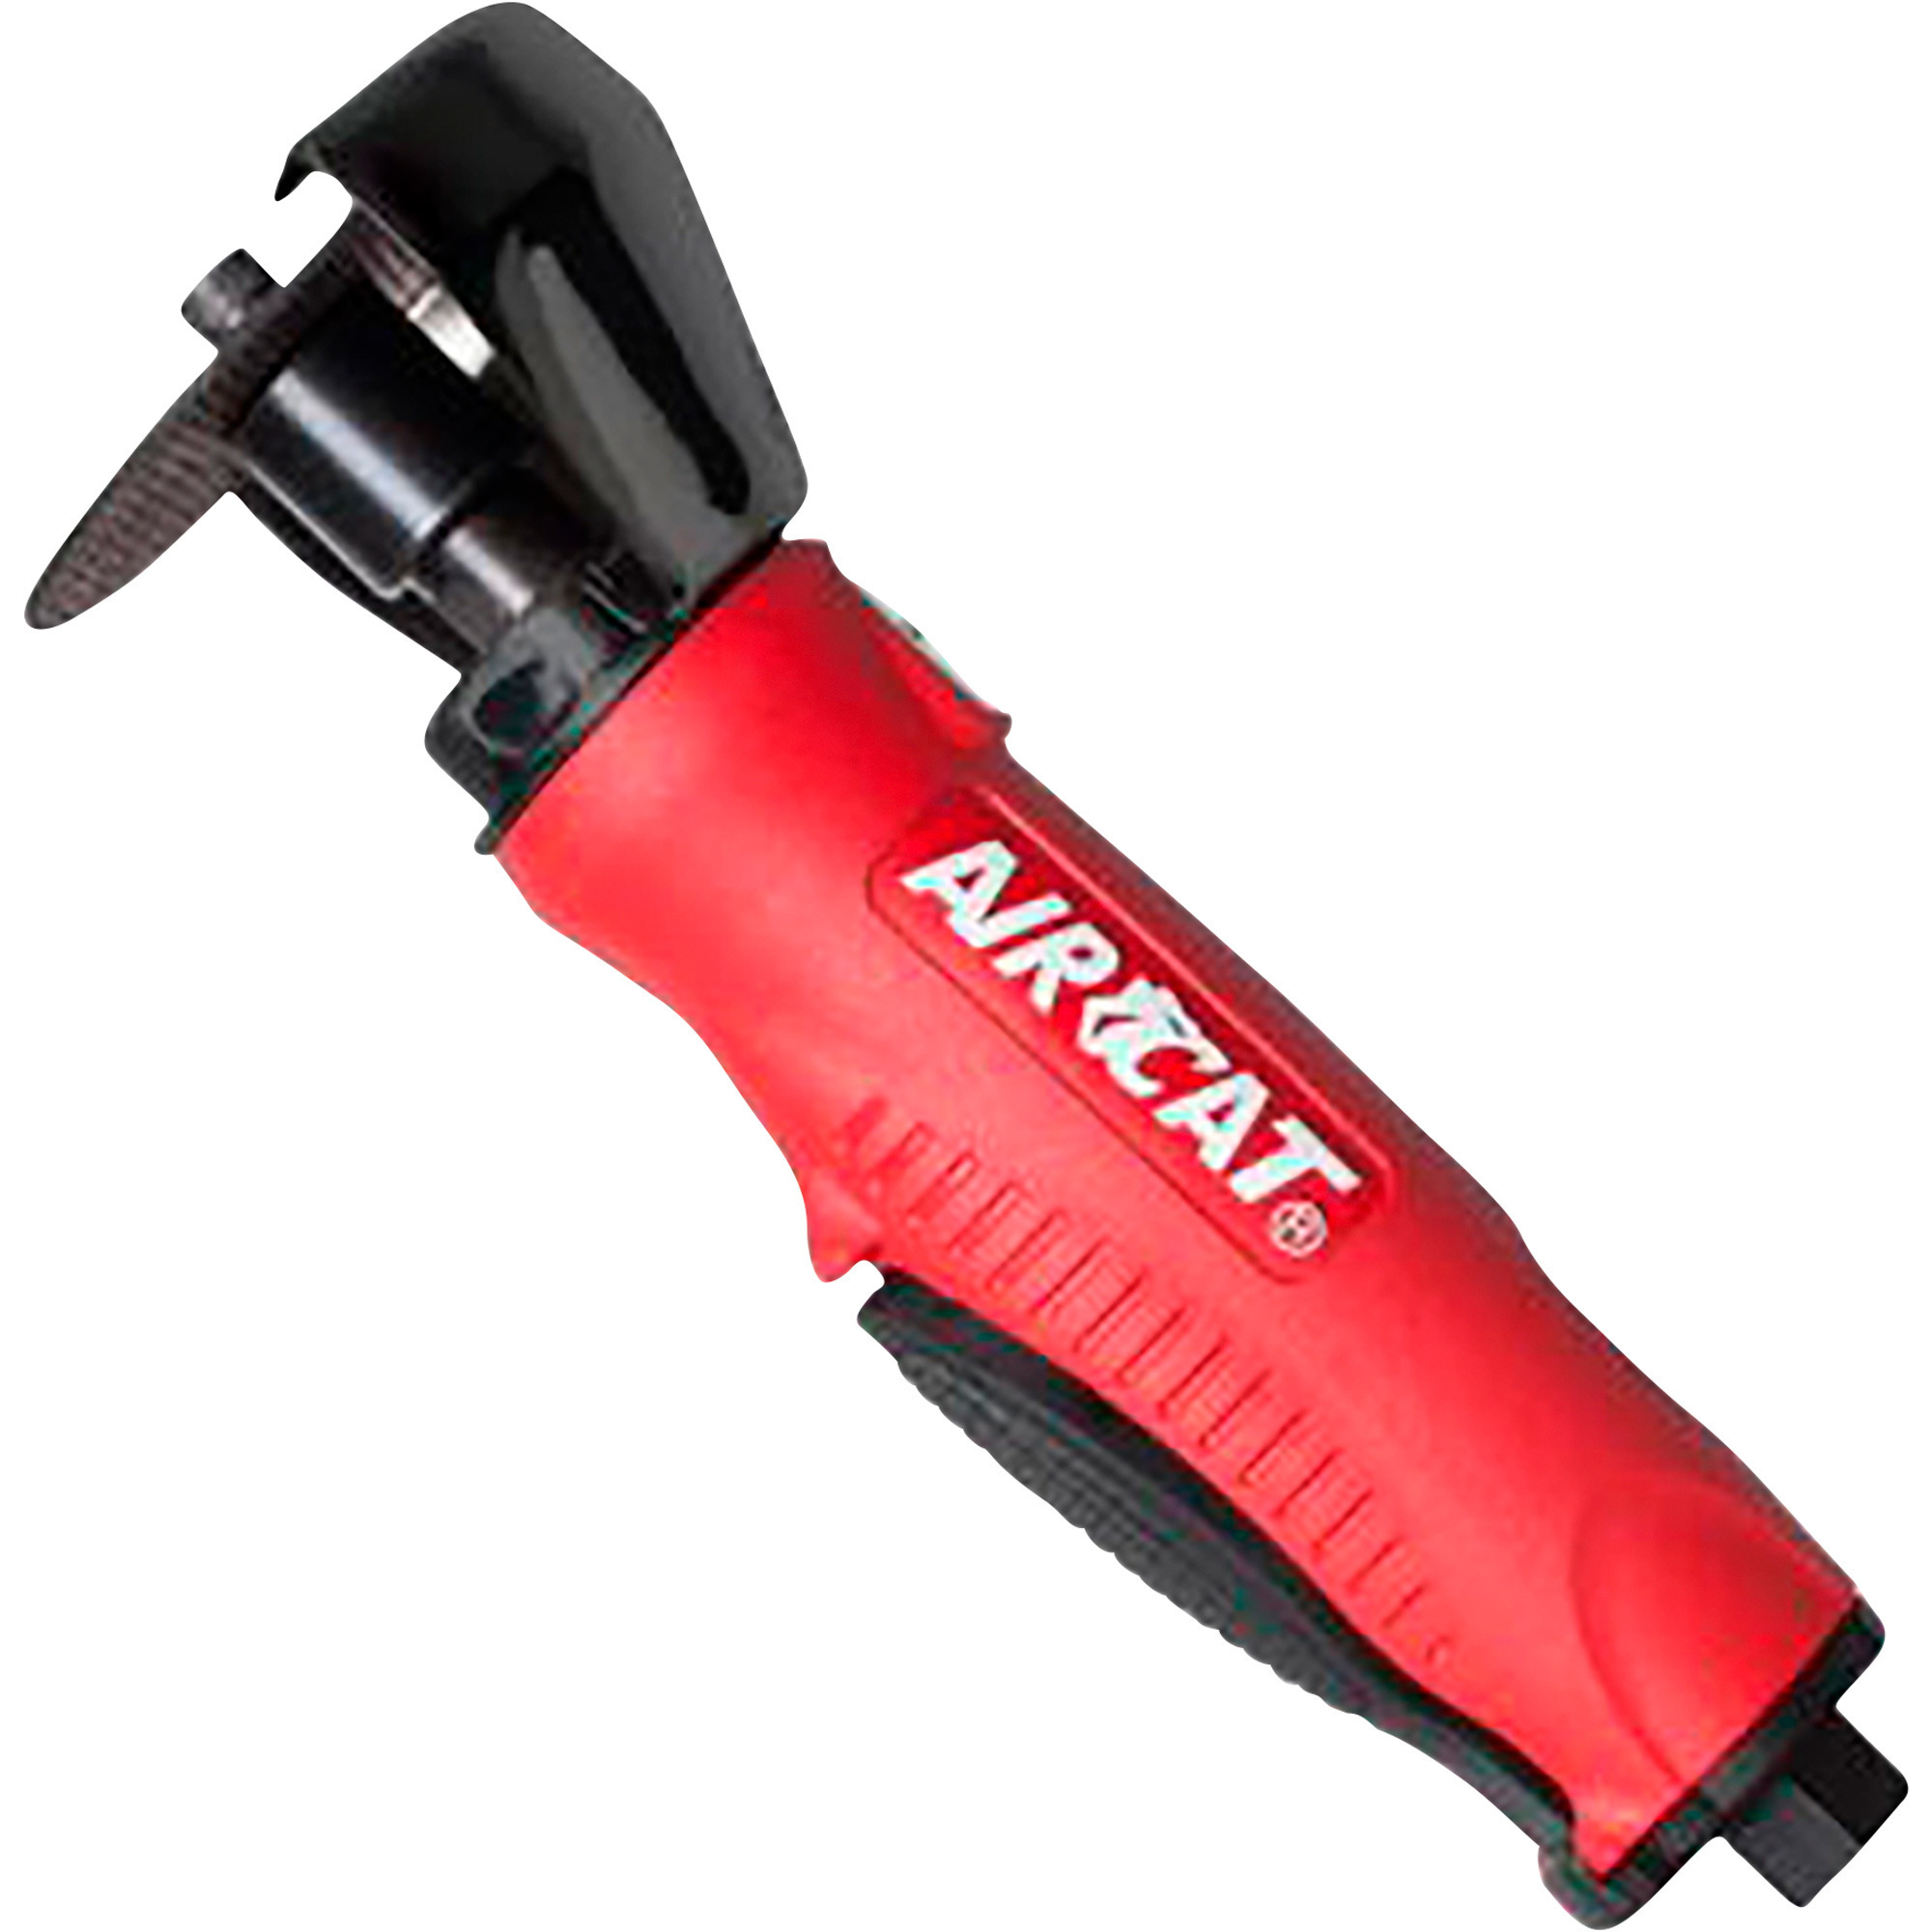 AIRCAT Air Cutoff Tool â 20,000 RPM, Model 6505